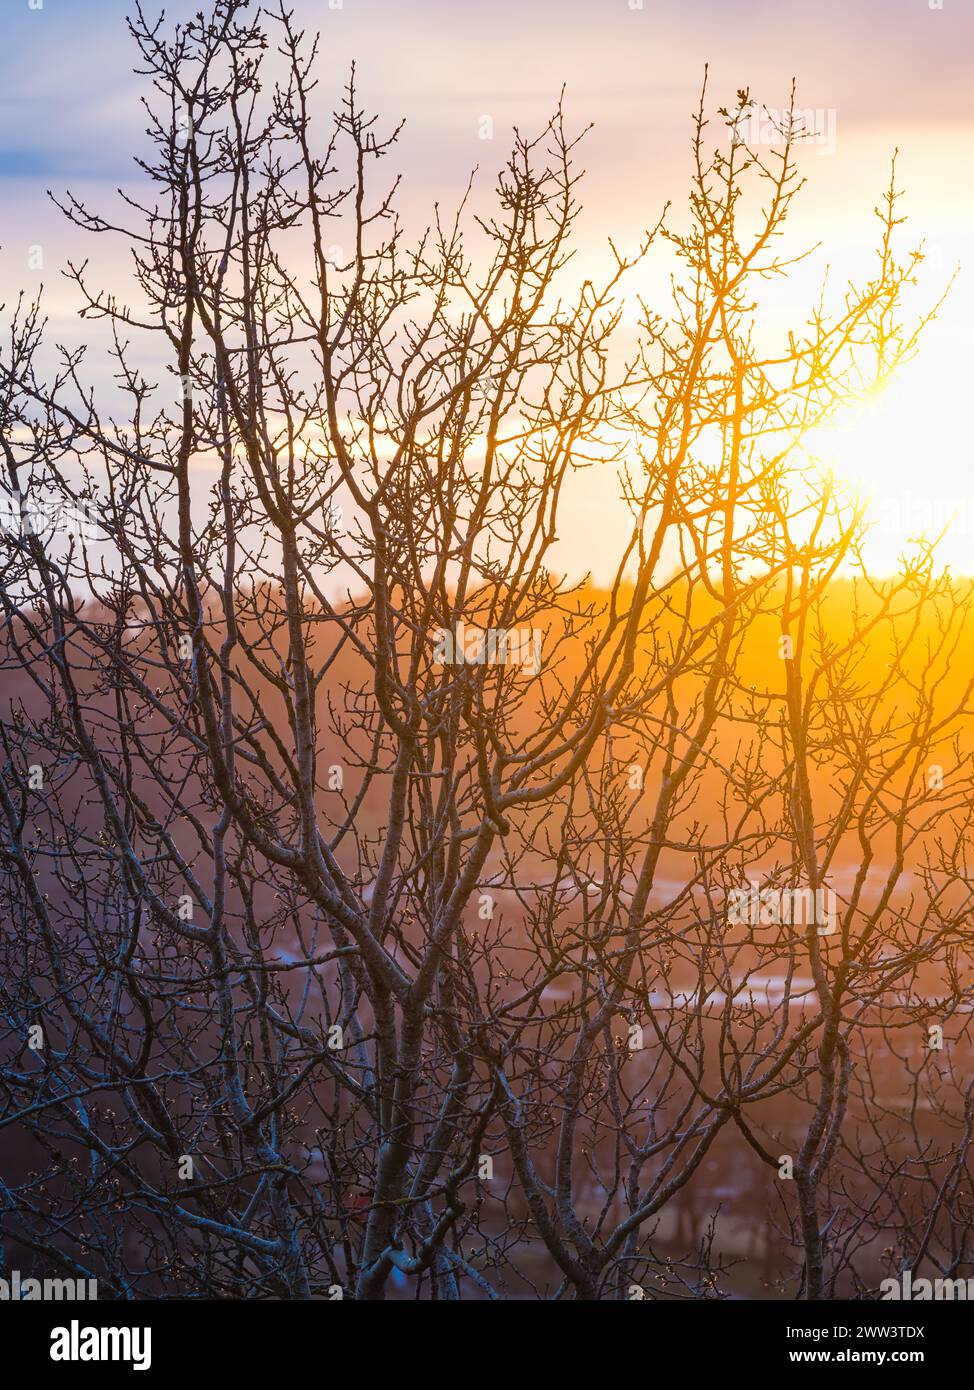 Le soleil se couche en arrière-plan, projetant une lueur chaude sur un arbre sans feuilles en Suède. La silhouette de l'arbre se détache sur le ciel coloré Banque D'Images